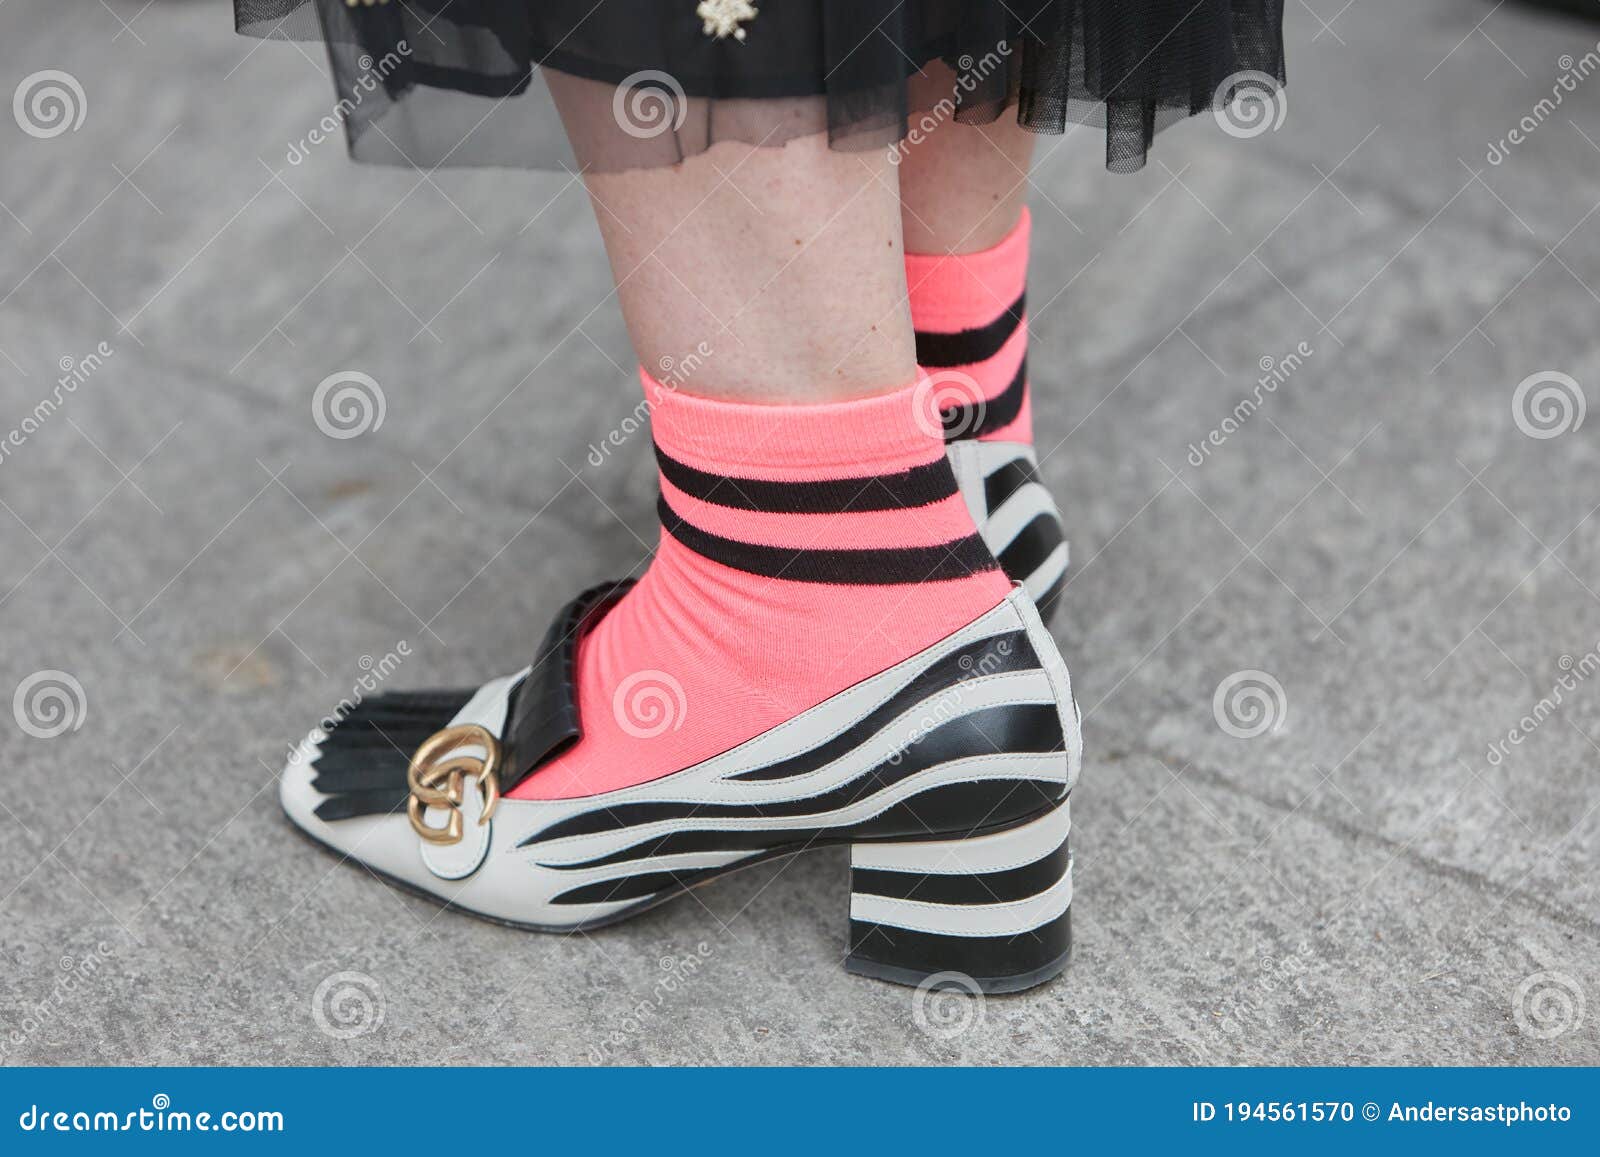 Mujer Con Zapatos Gucci Negros Y Blancos Y Calcetines Rosas Antes De La Semana De La Moda Giorgio Armani Imagen editorial - Imagen de gente, 194561570